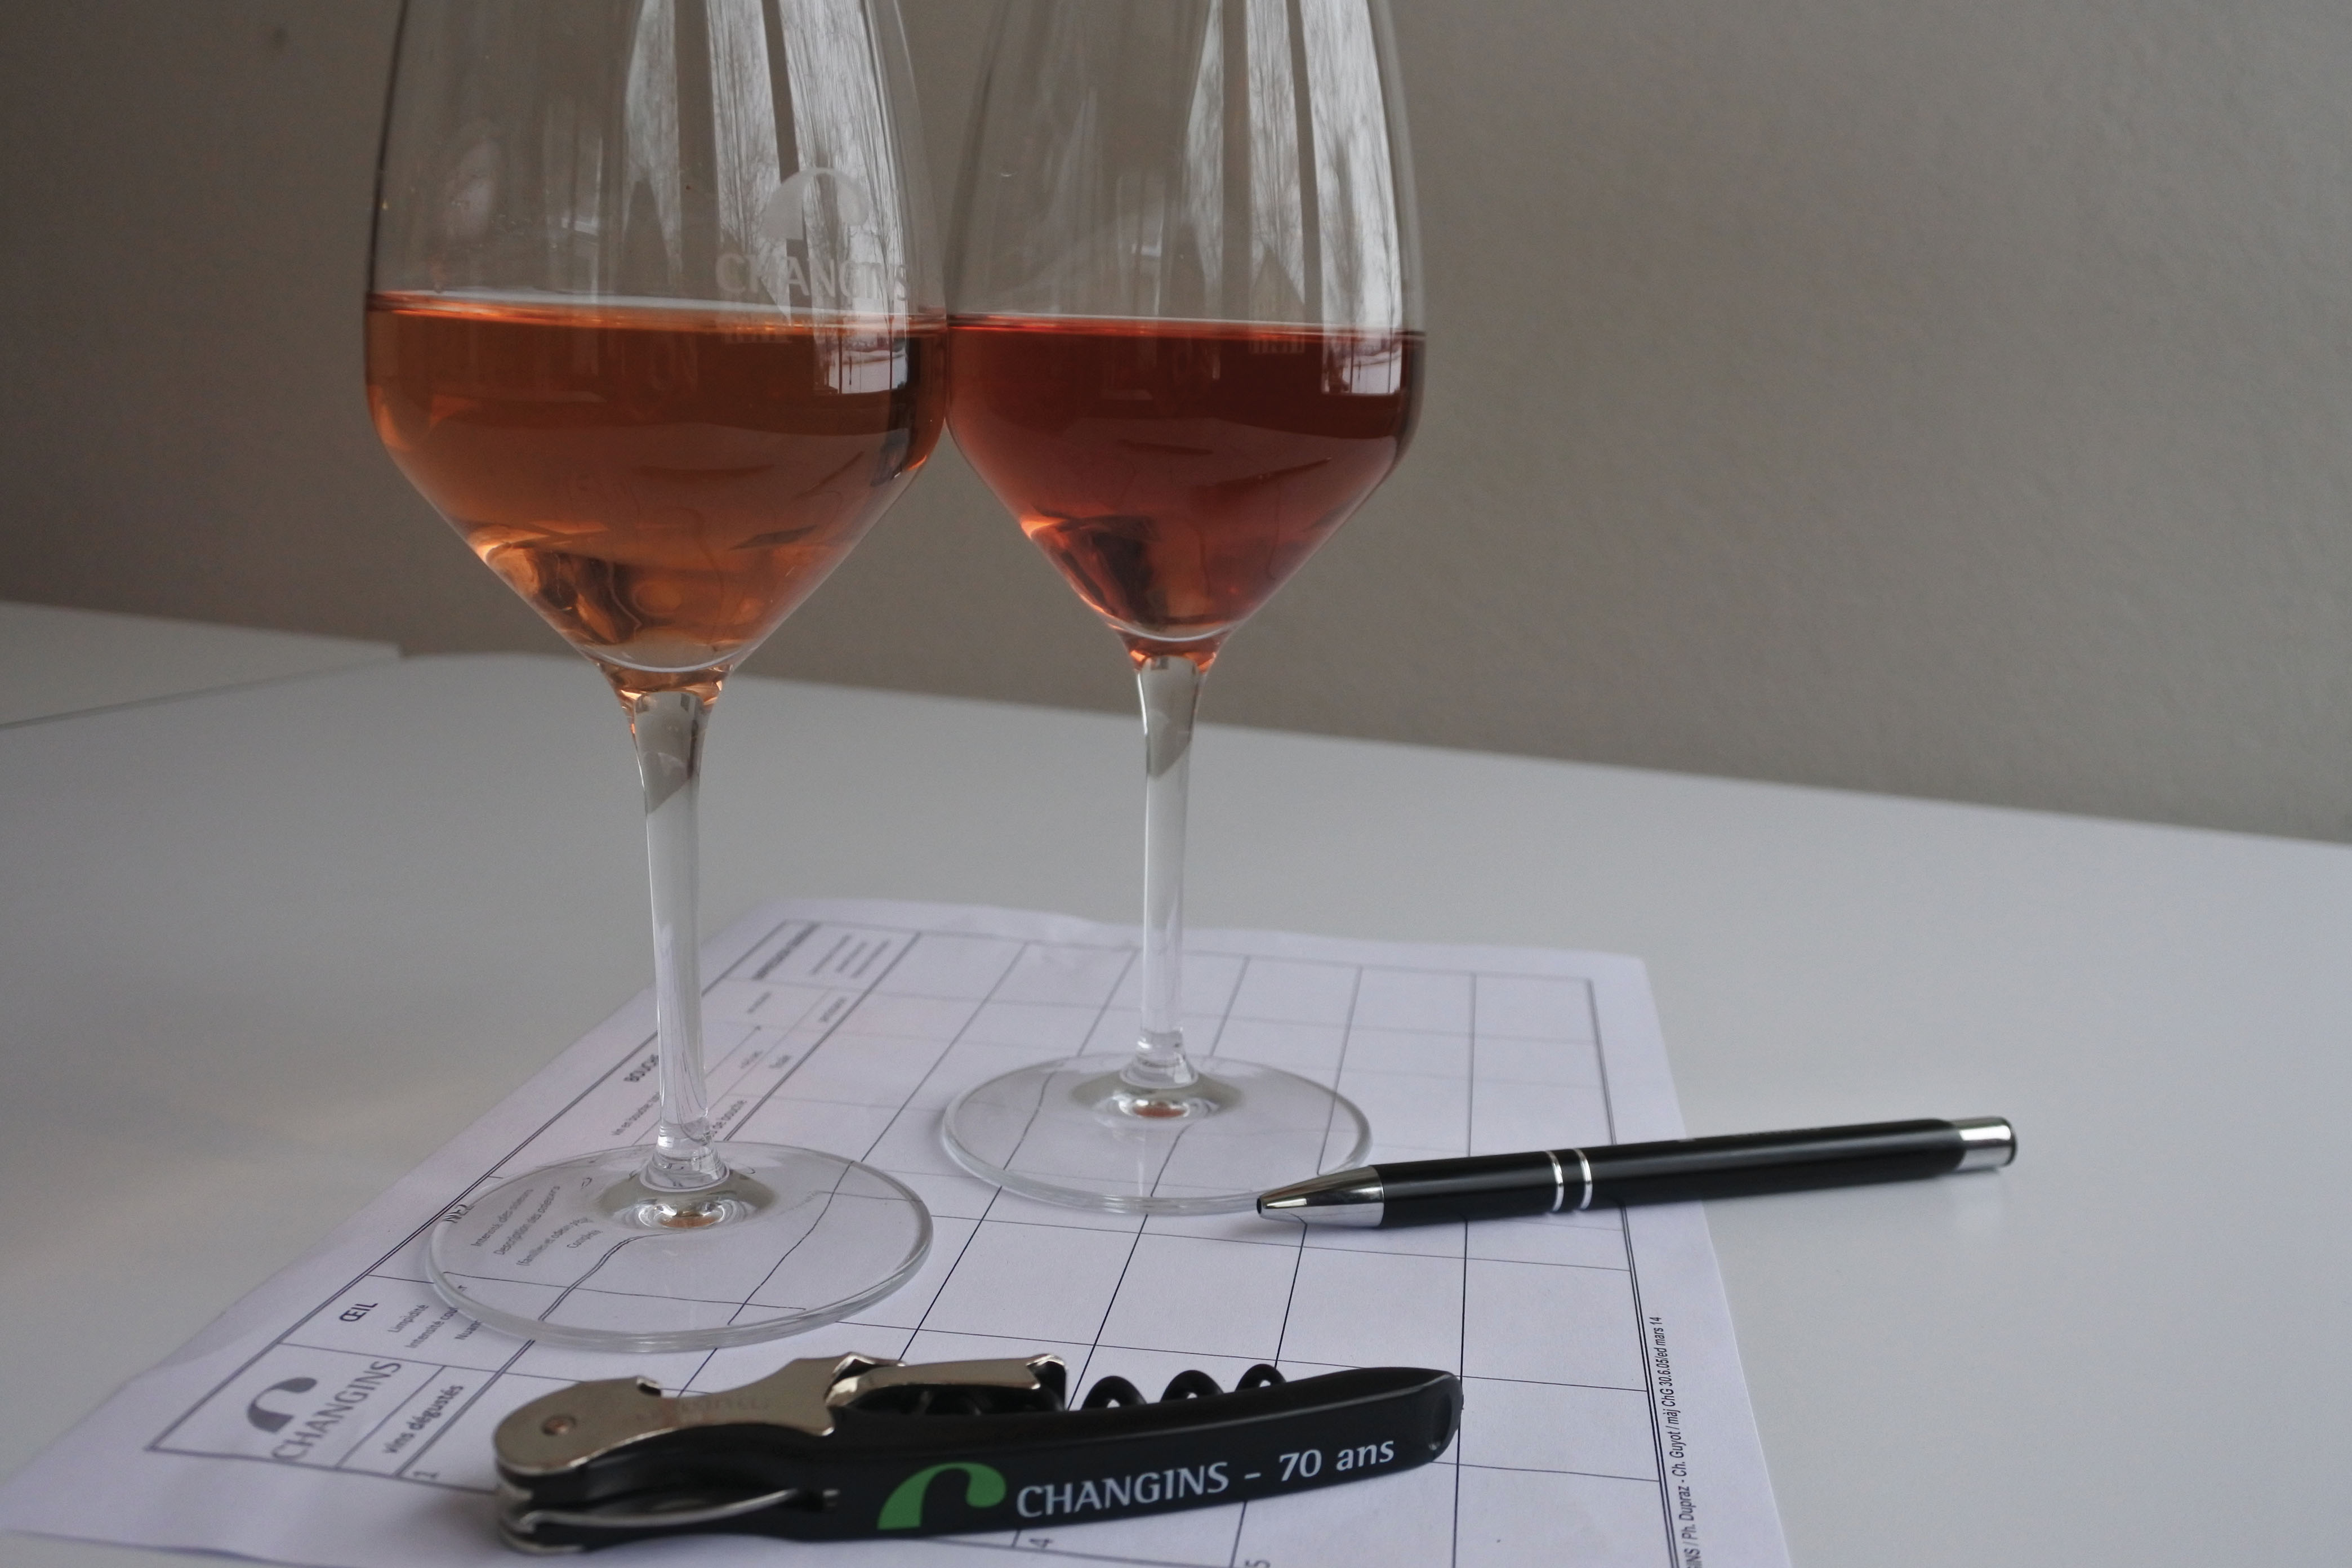 Vins rosés suisses, entre vins secs et sucrés, étude de l’offre et des préférences des consommateurs